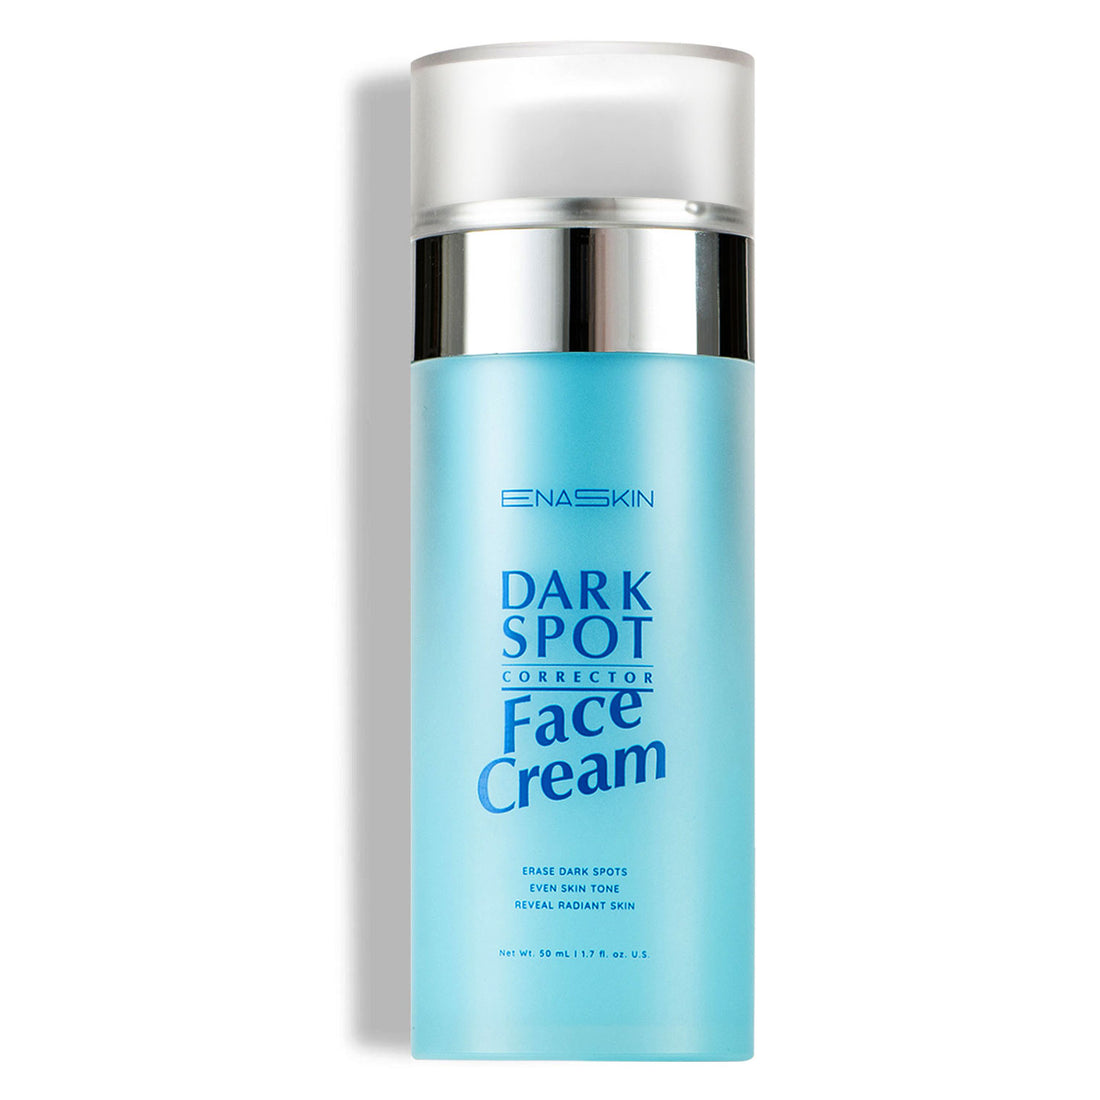 Dark Spot Corrector Face Cream